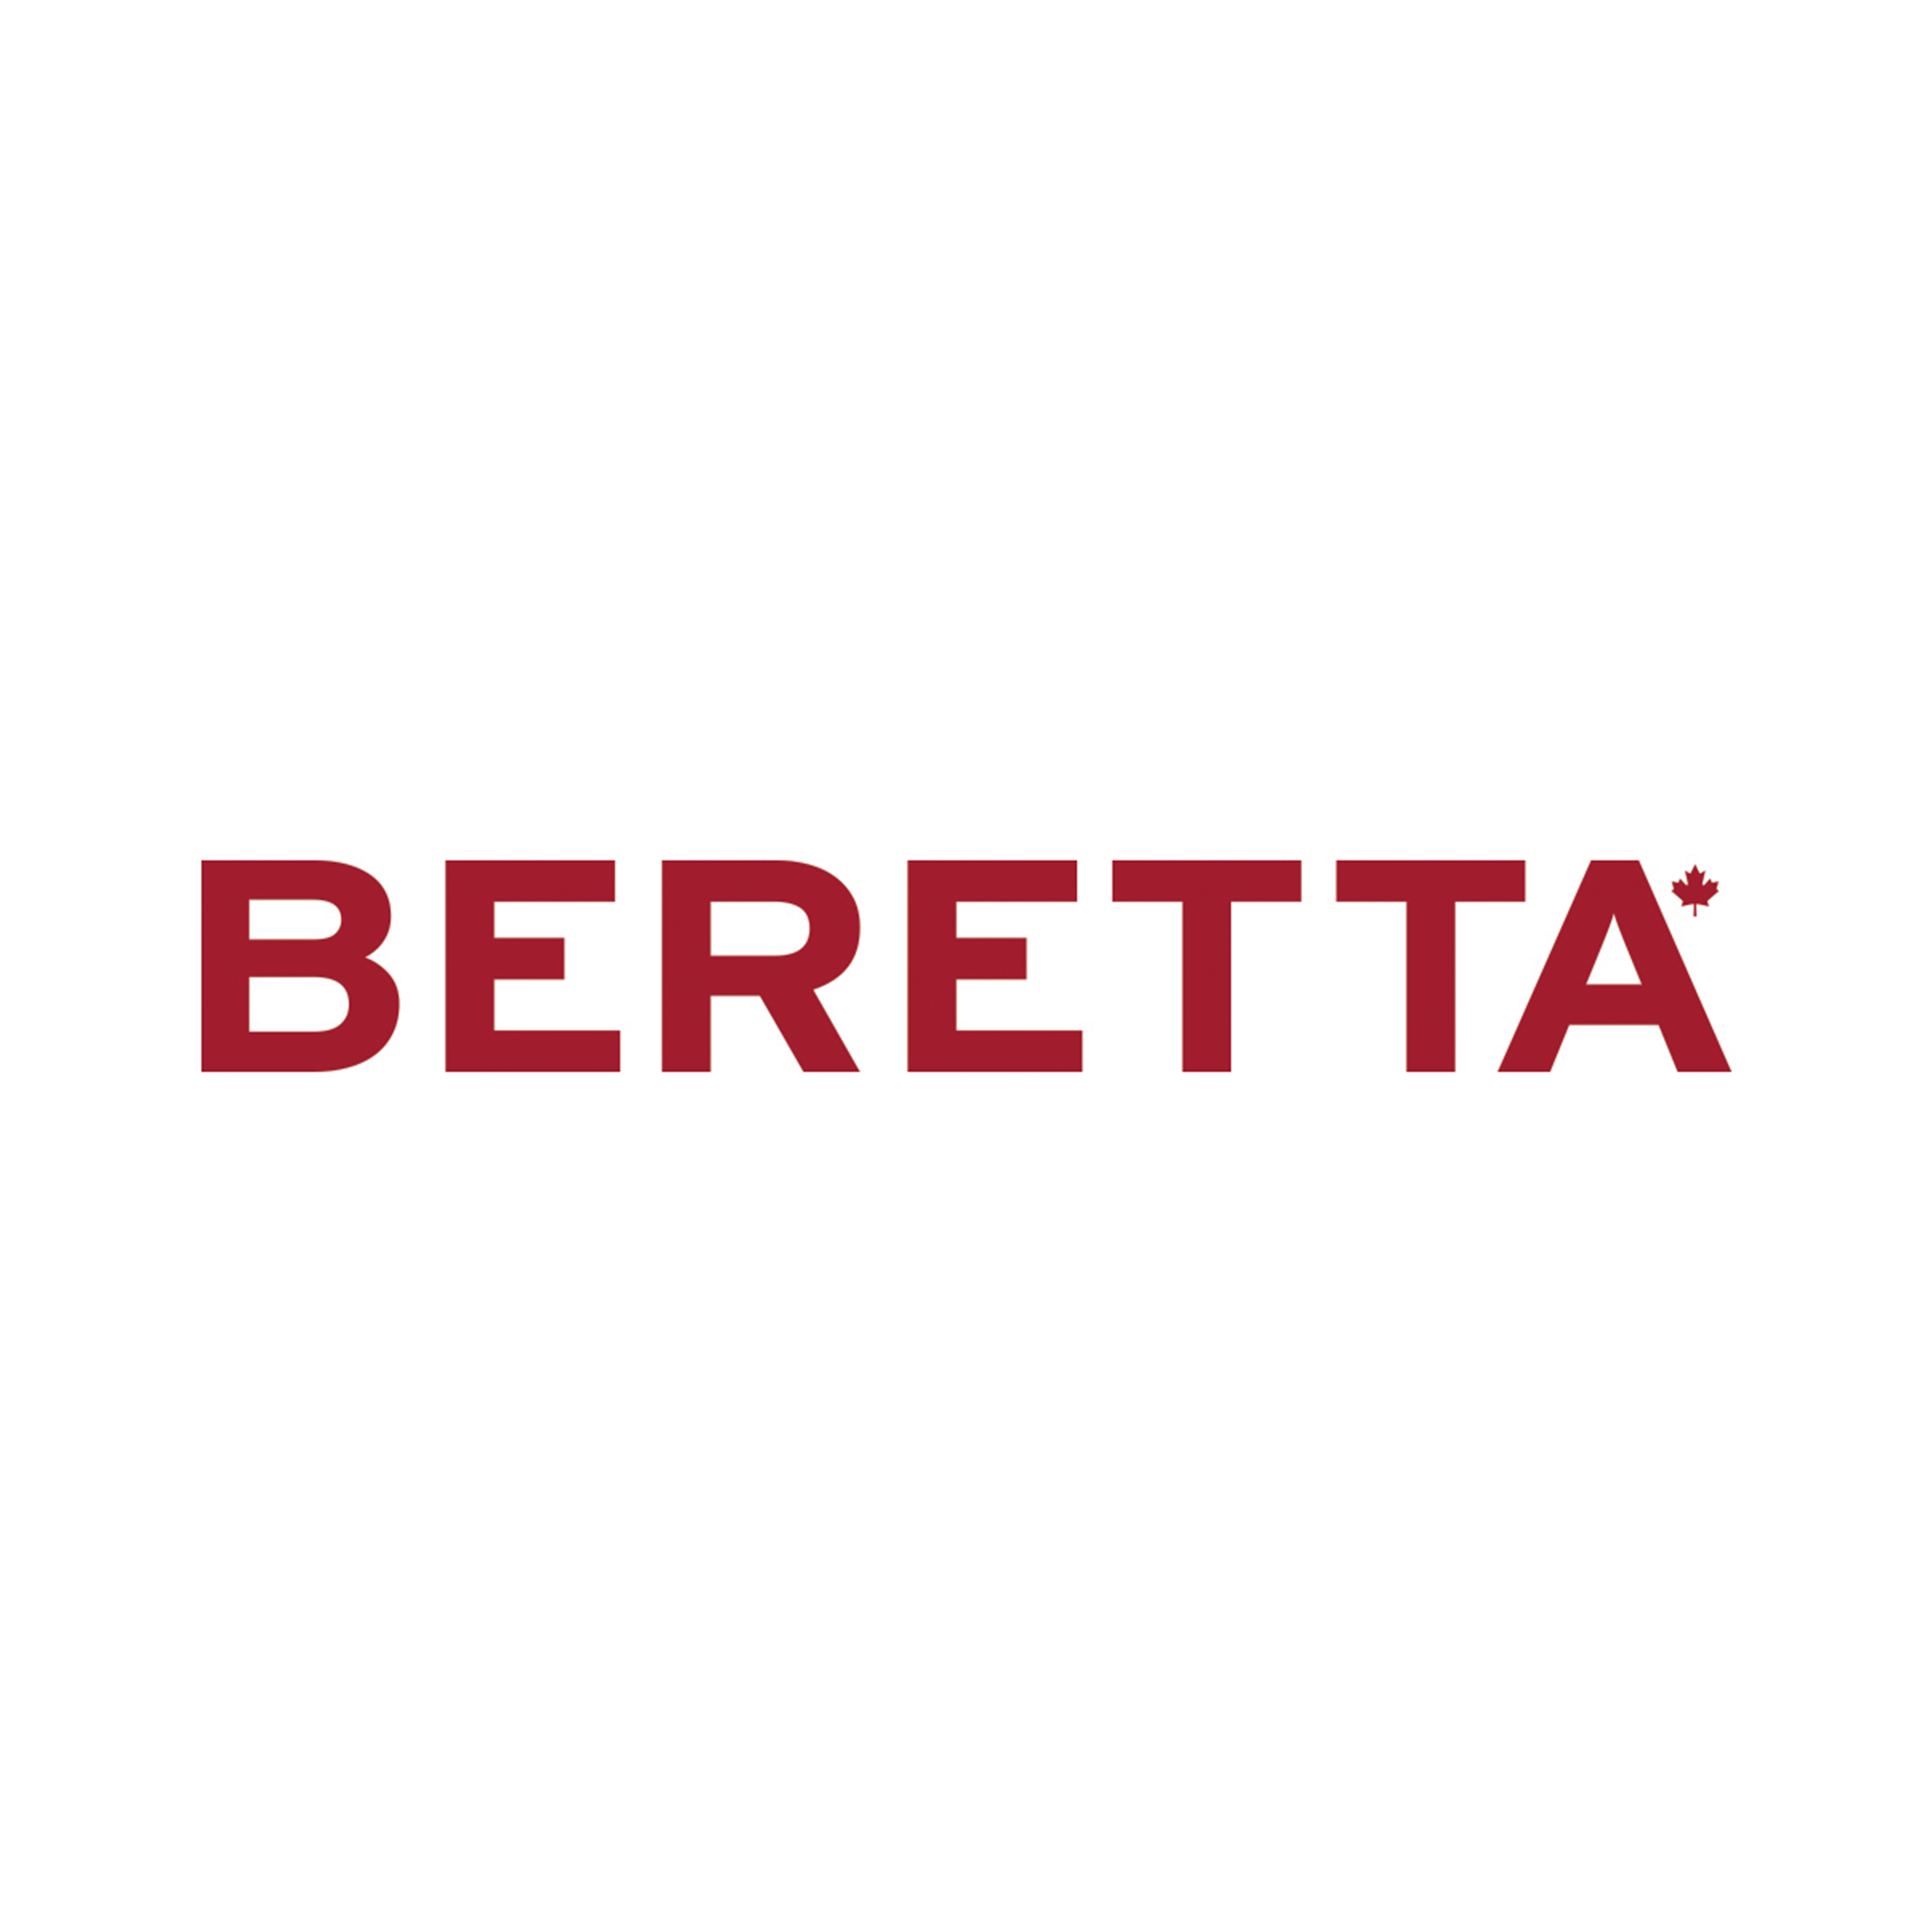 Beretta Farms - The Beretta Story